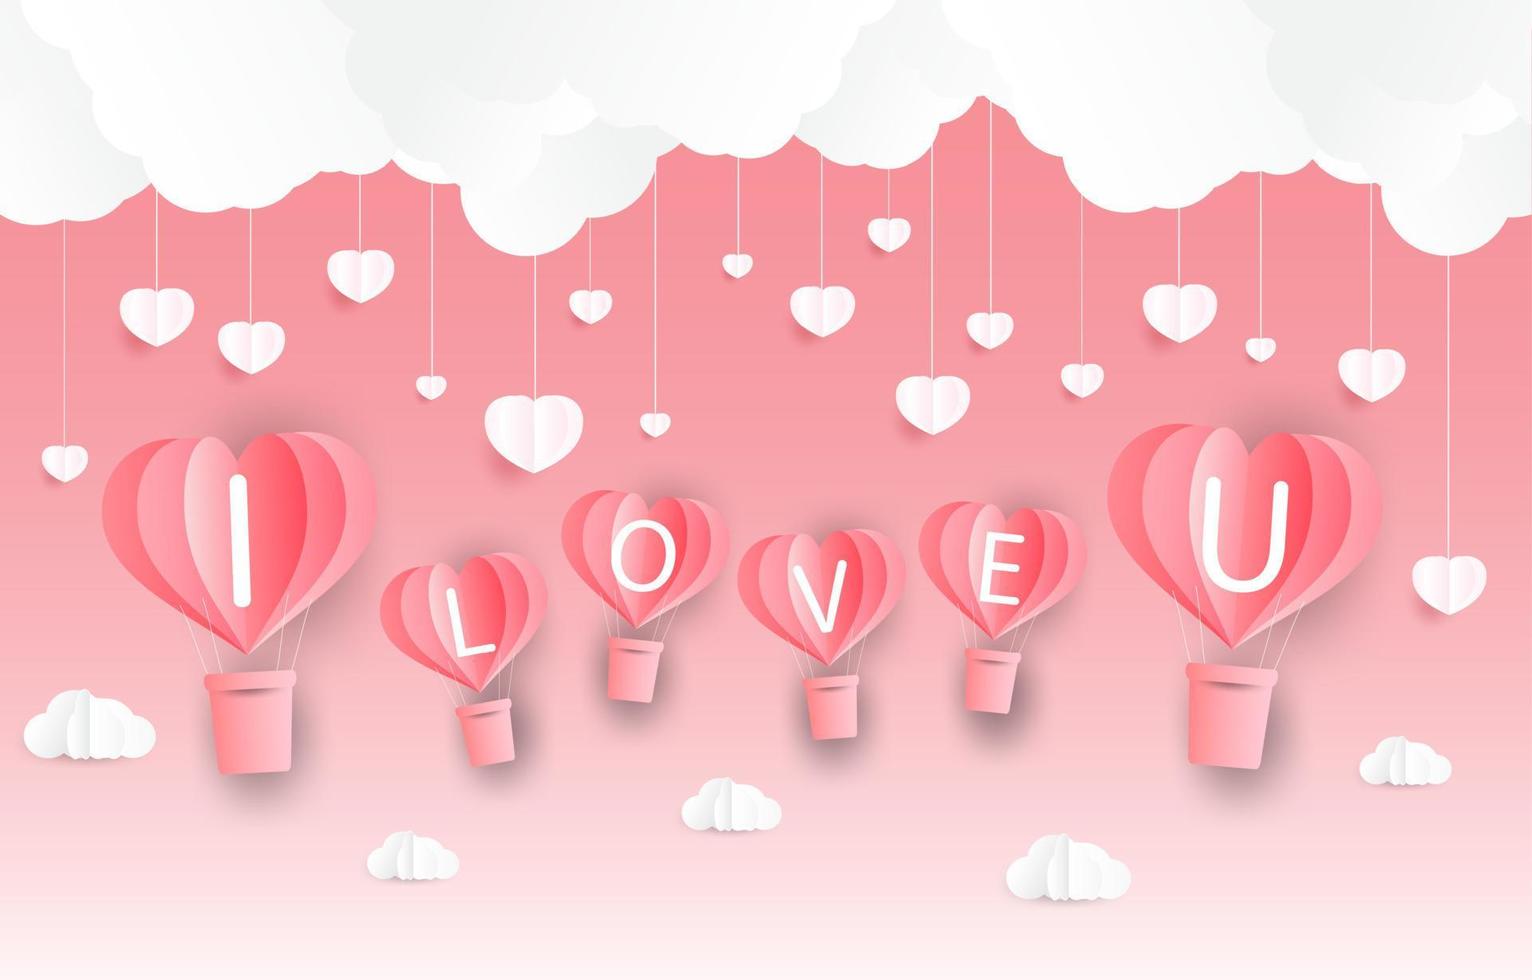 amore e San Valentino, gli amanti stanno in piedi e un palloncino a forma di cuore di carta che galleggia nel cielo. stile artigianale. vettore